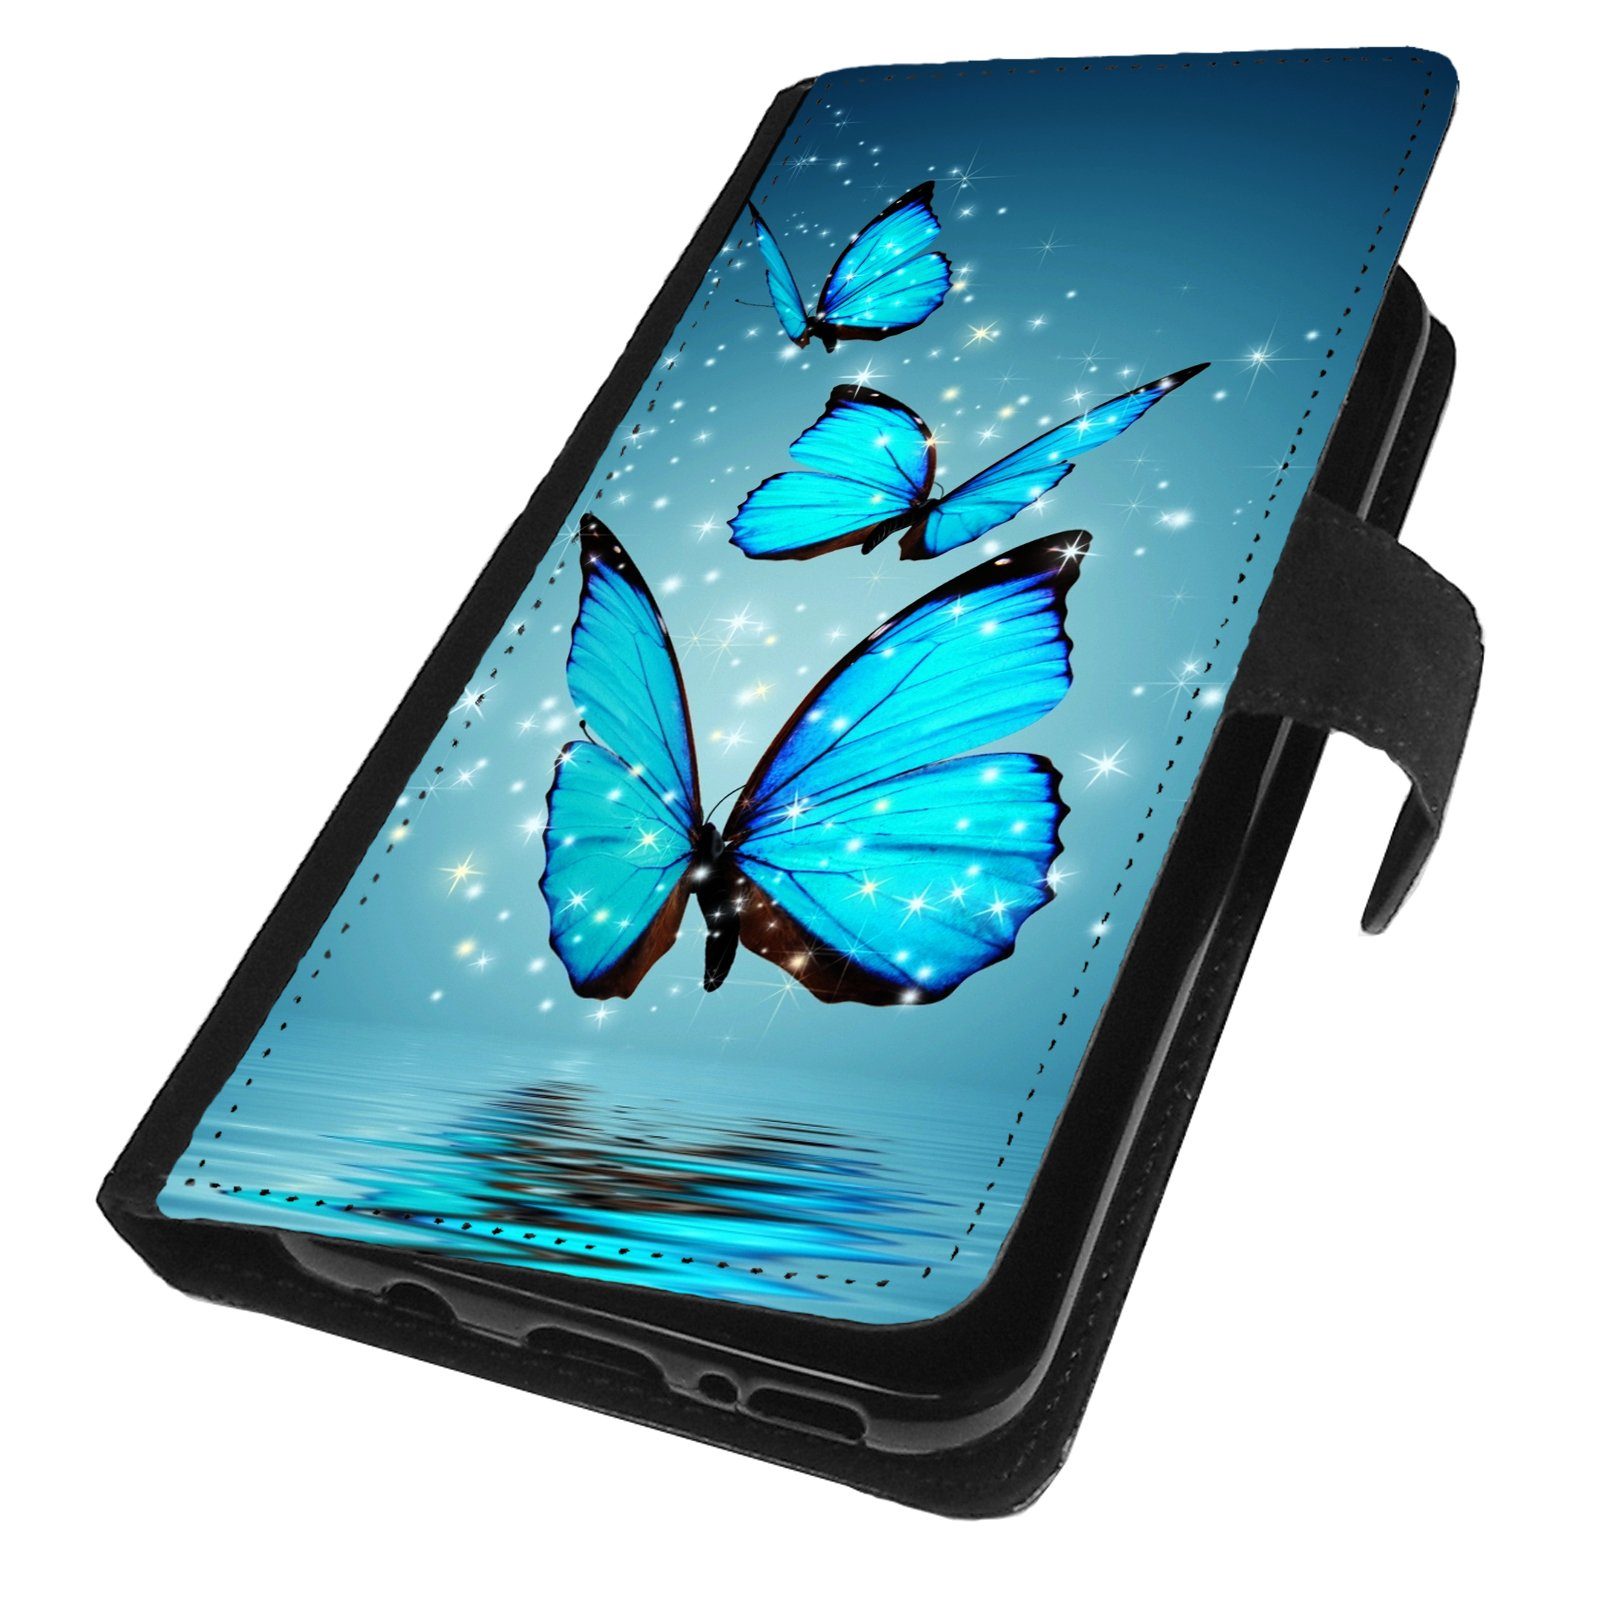 Traumhuelle Handyhülle Für Samsung Galaxy Note 10 / Note 10+ Plus  Schutzhülle Motiv 4, Schmetterling Blau Handy Tasche Klapp Hülle Case Etui  Cover Silikon